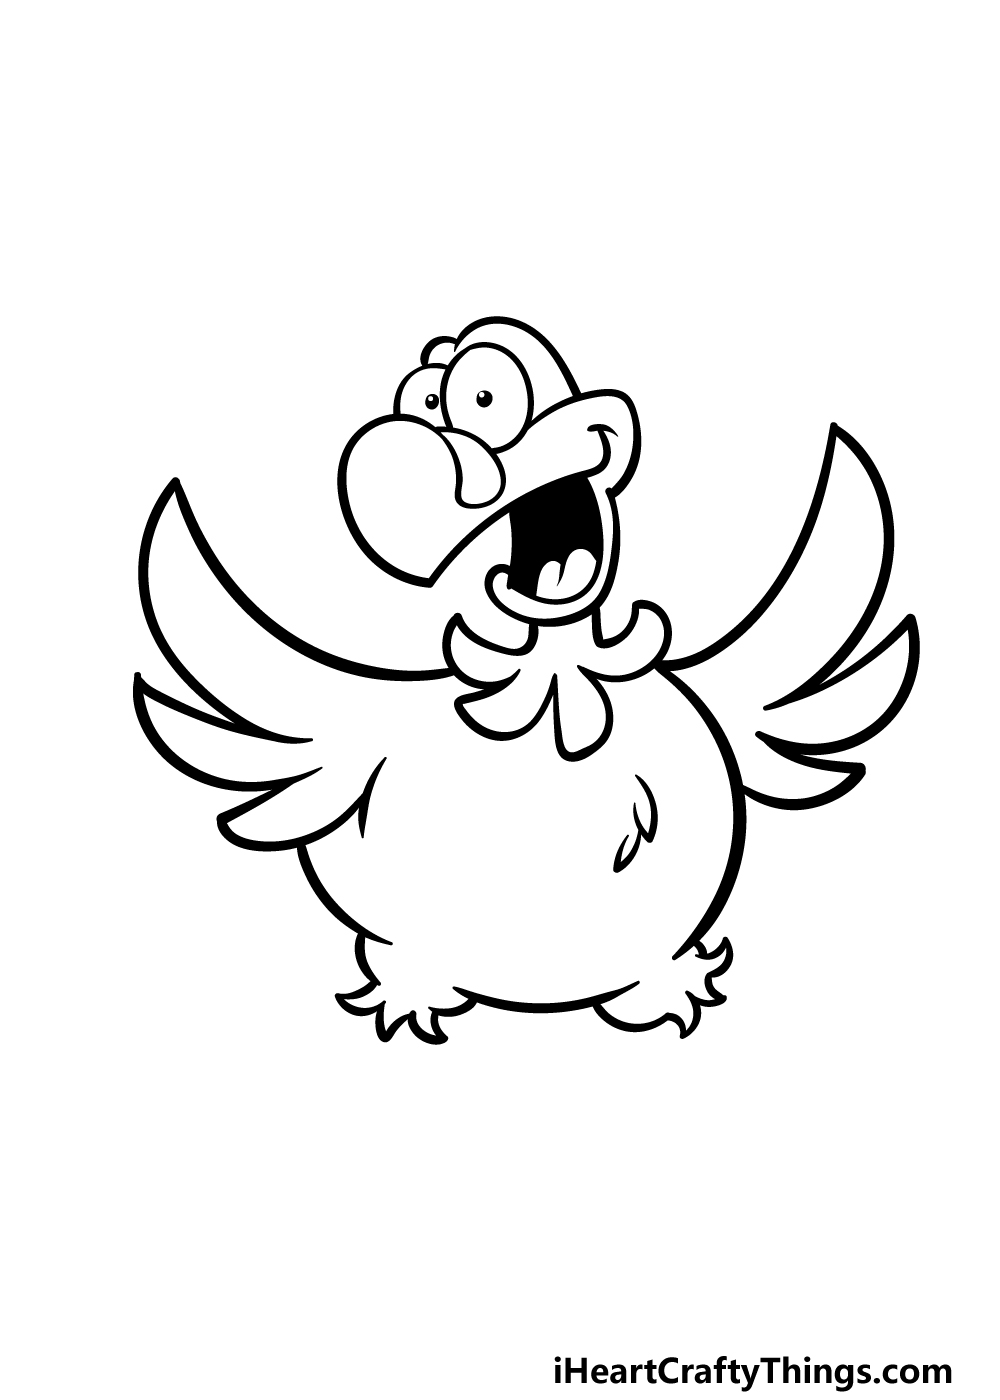 how to draw a cartoon turkey step 3